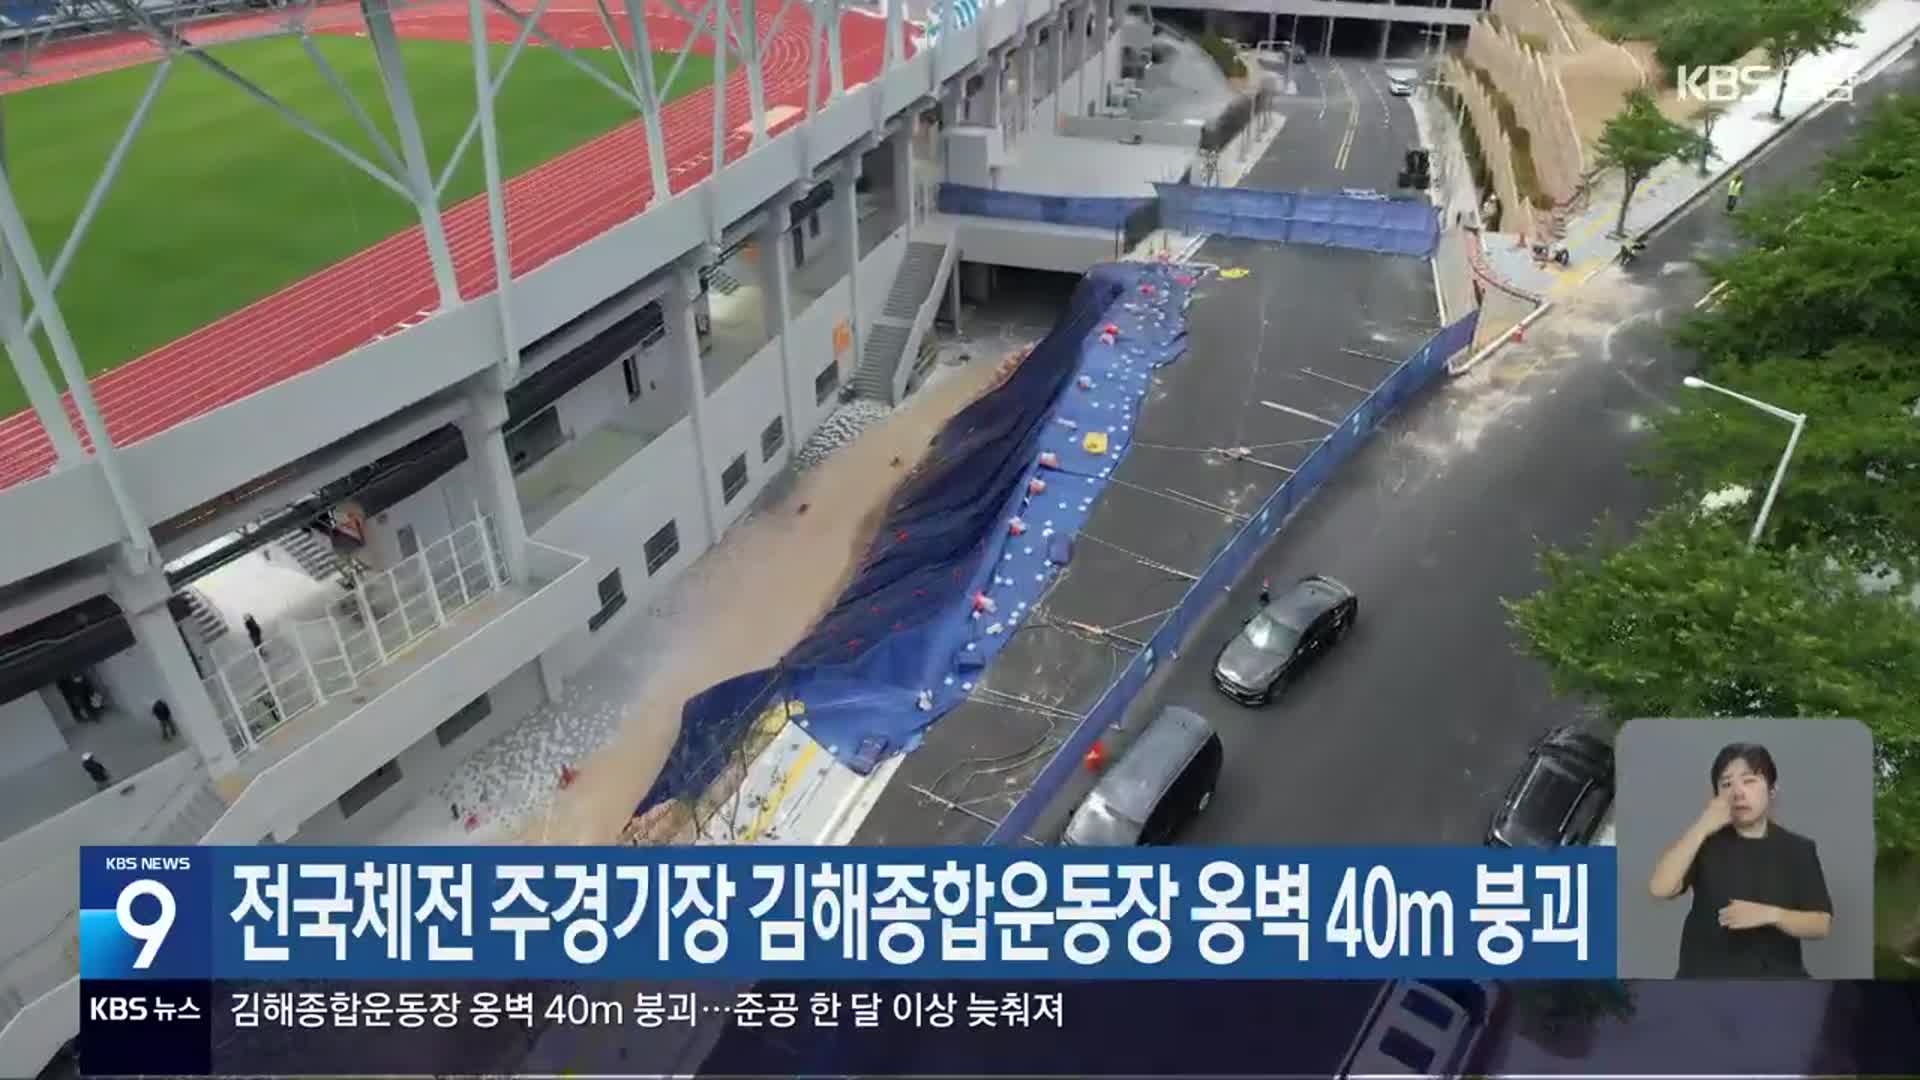 전국체전 주경기장 김해종합운동장 옹벽 40m 붕괴